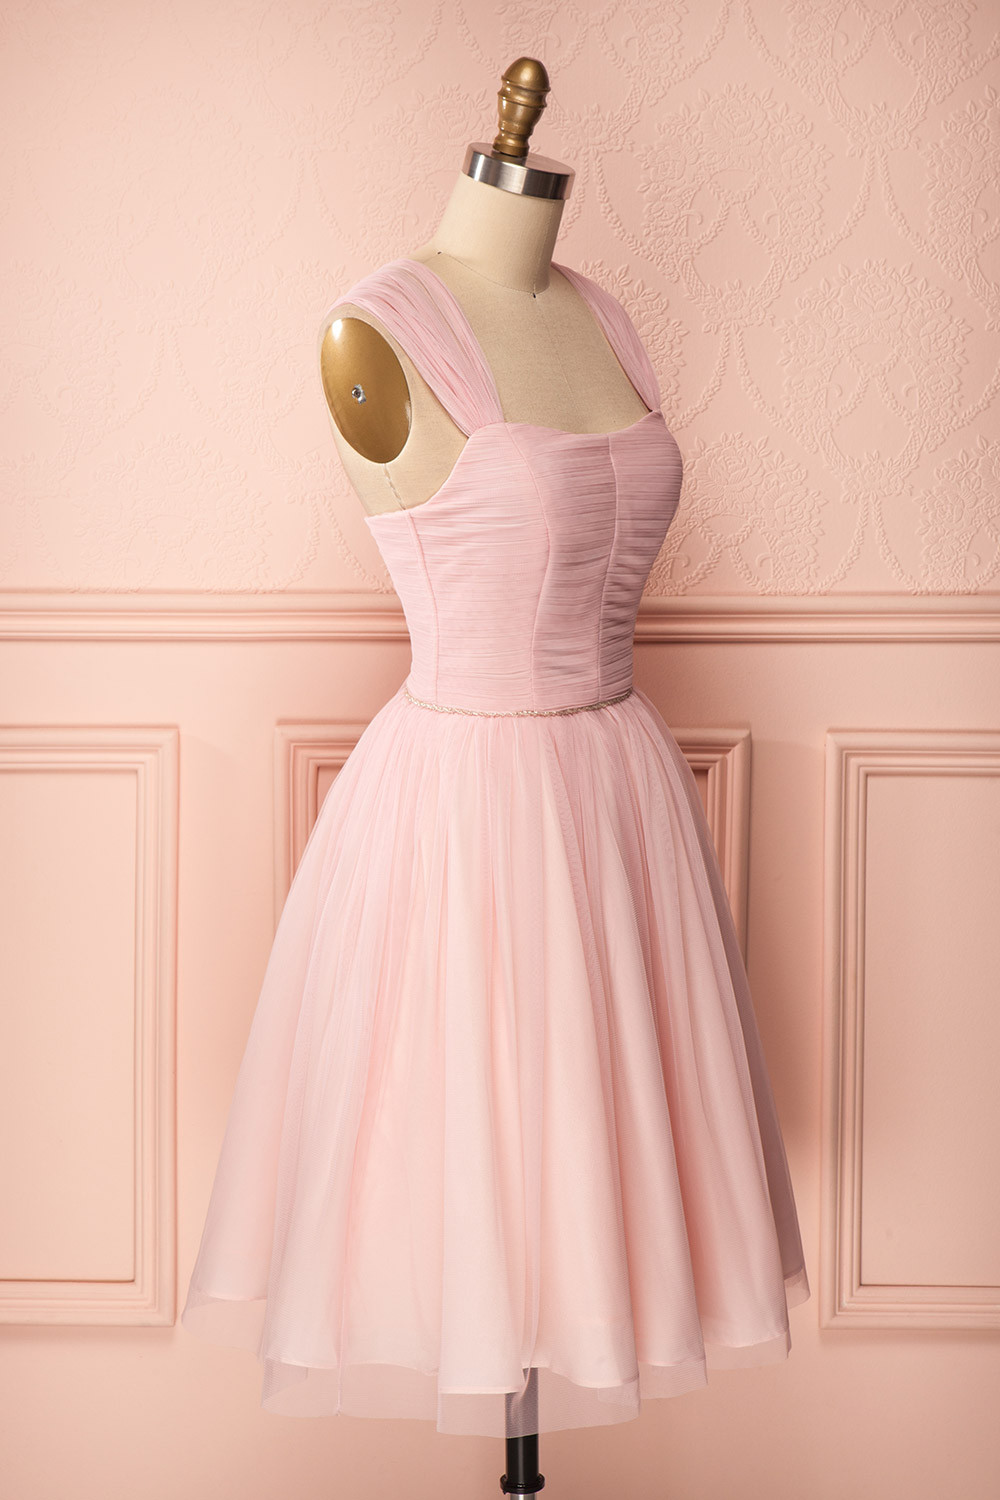 Cute Pink Prom Dress, 2017 Prom Dress, Short Prom Dress, 2017 Short ...